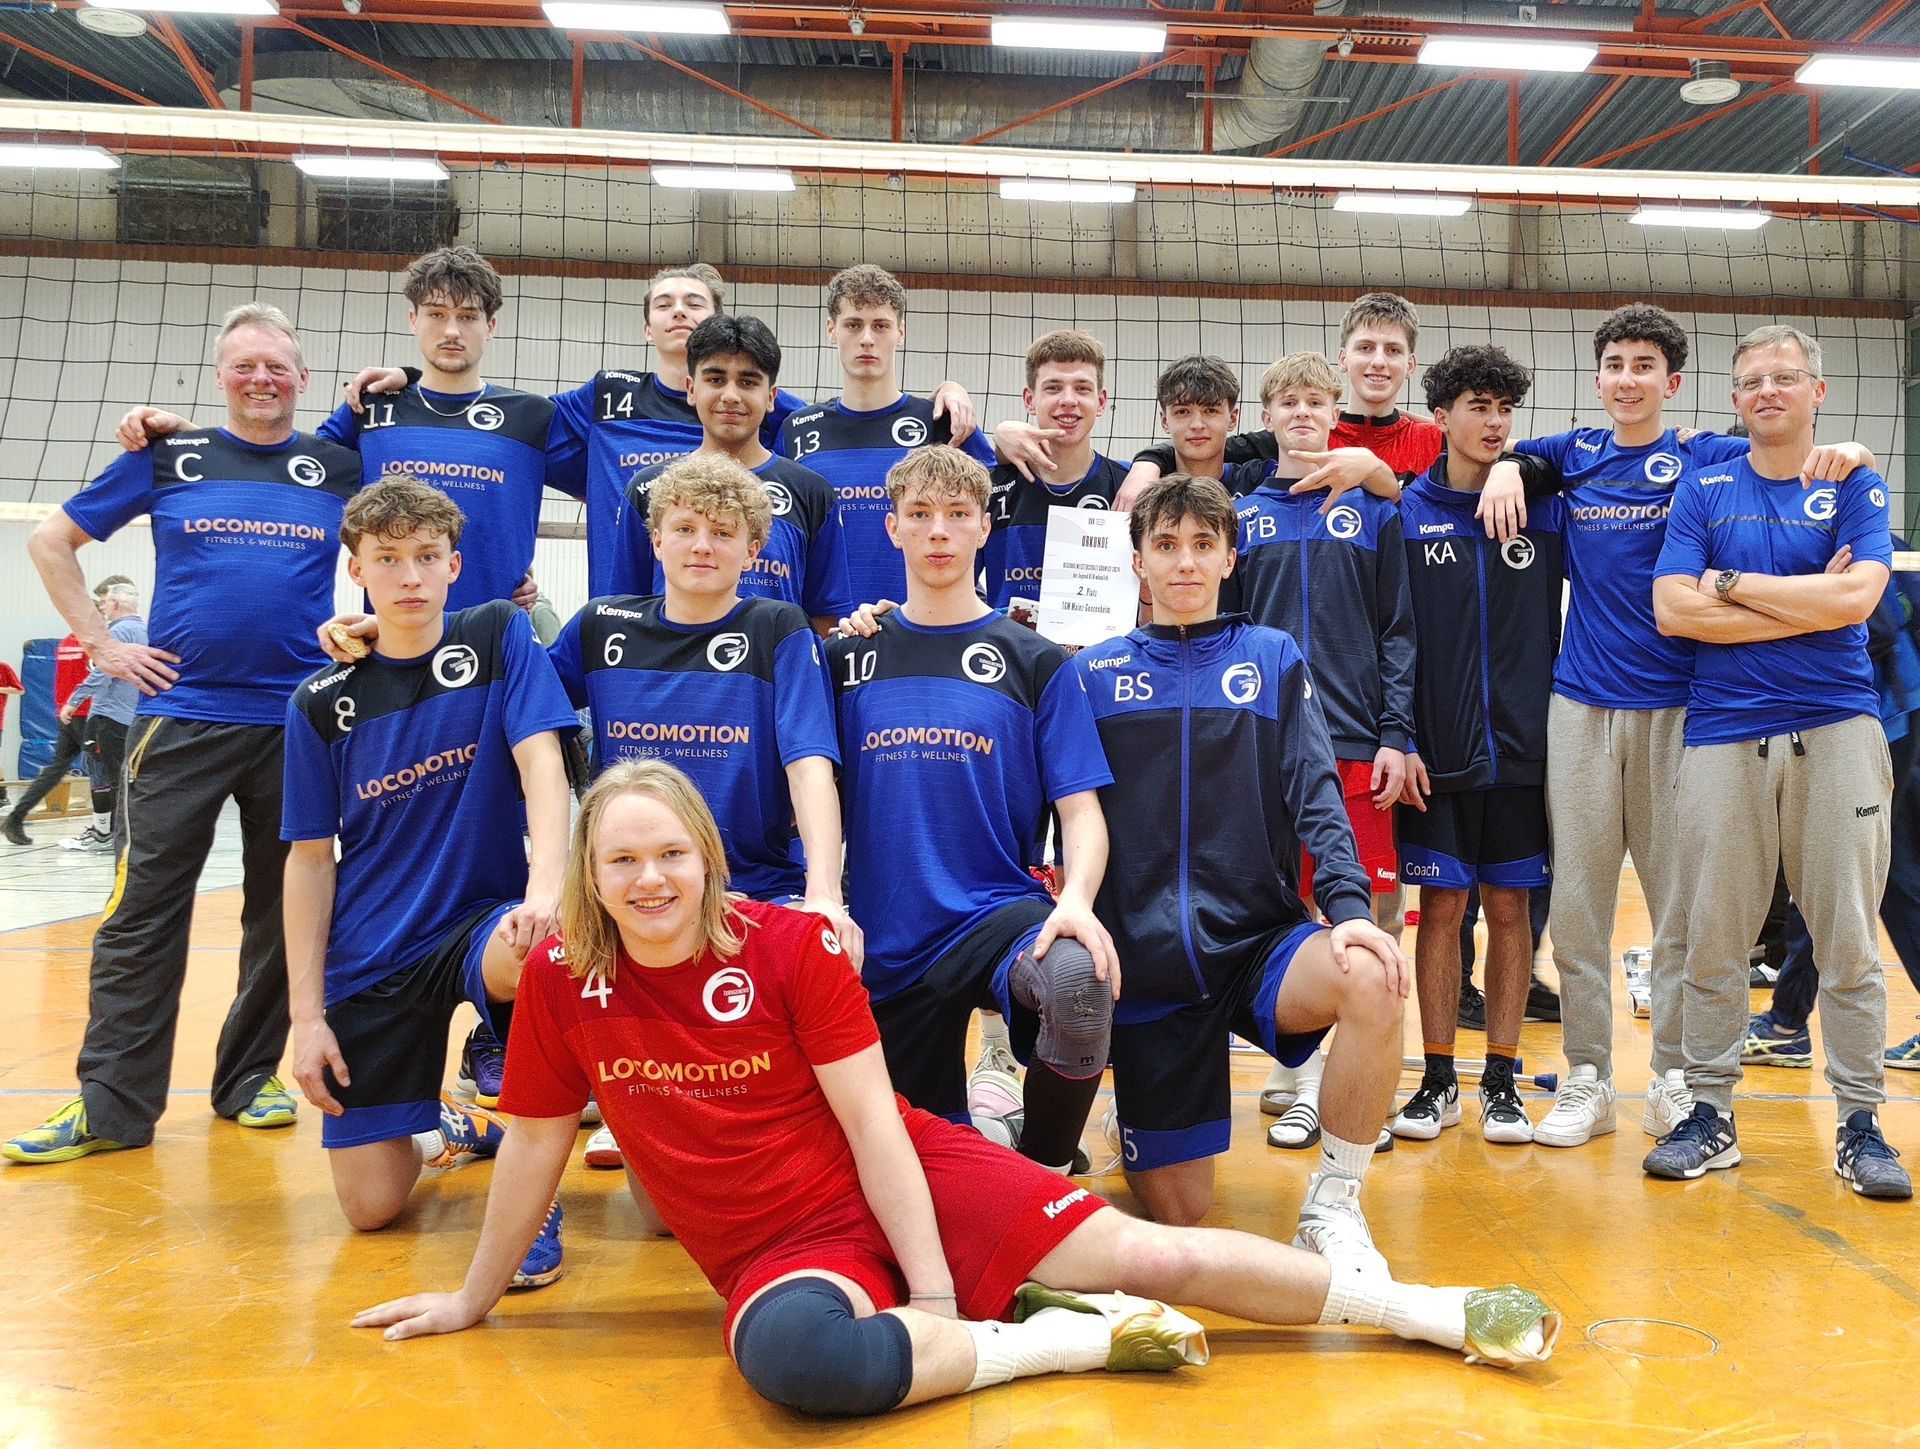 Westerwald Volleys-Jugendspieler erfolgreich gemeinsam mit Mainz